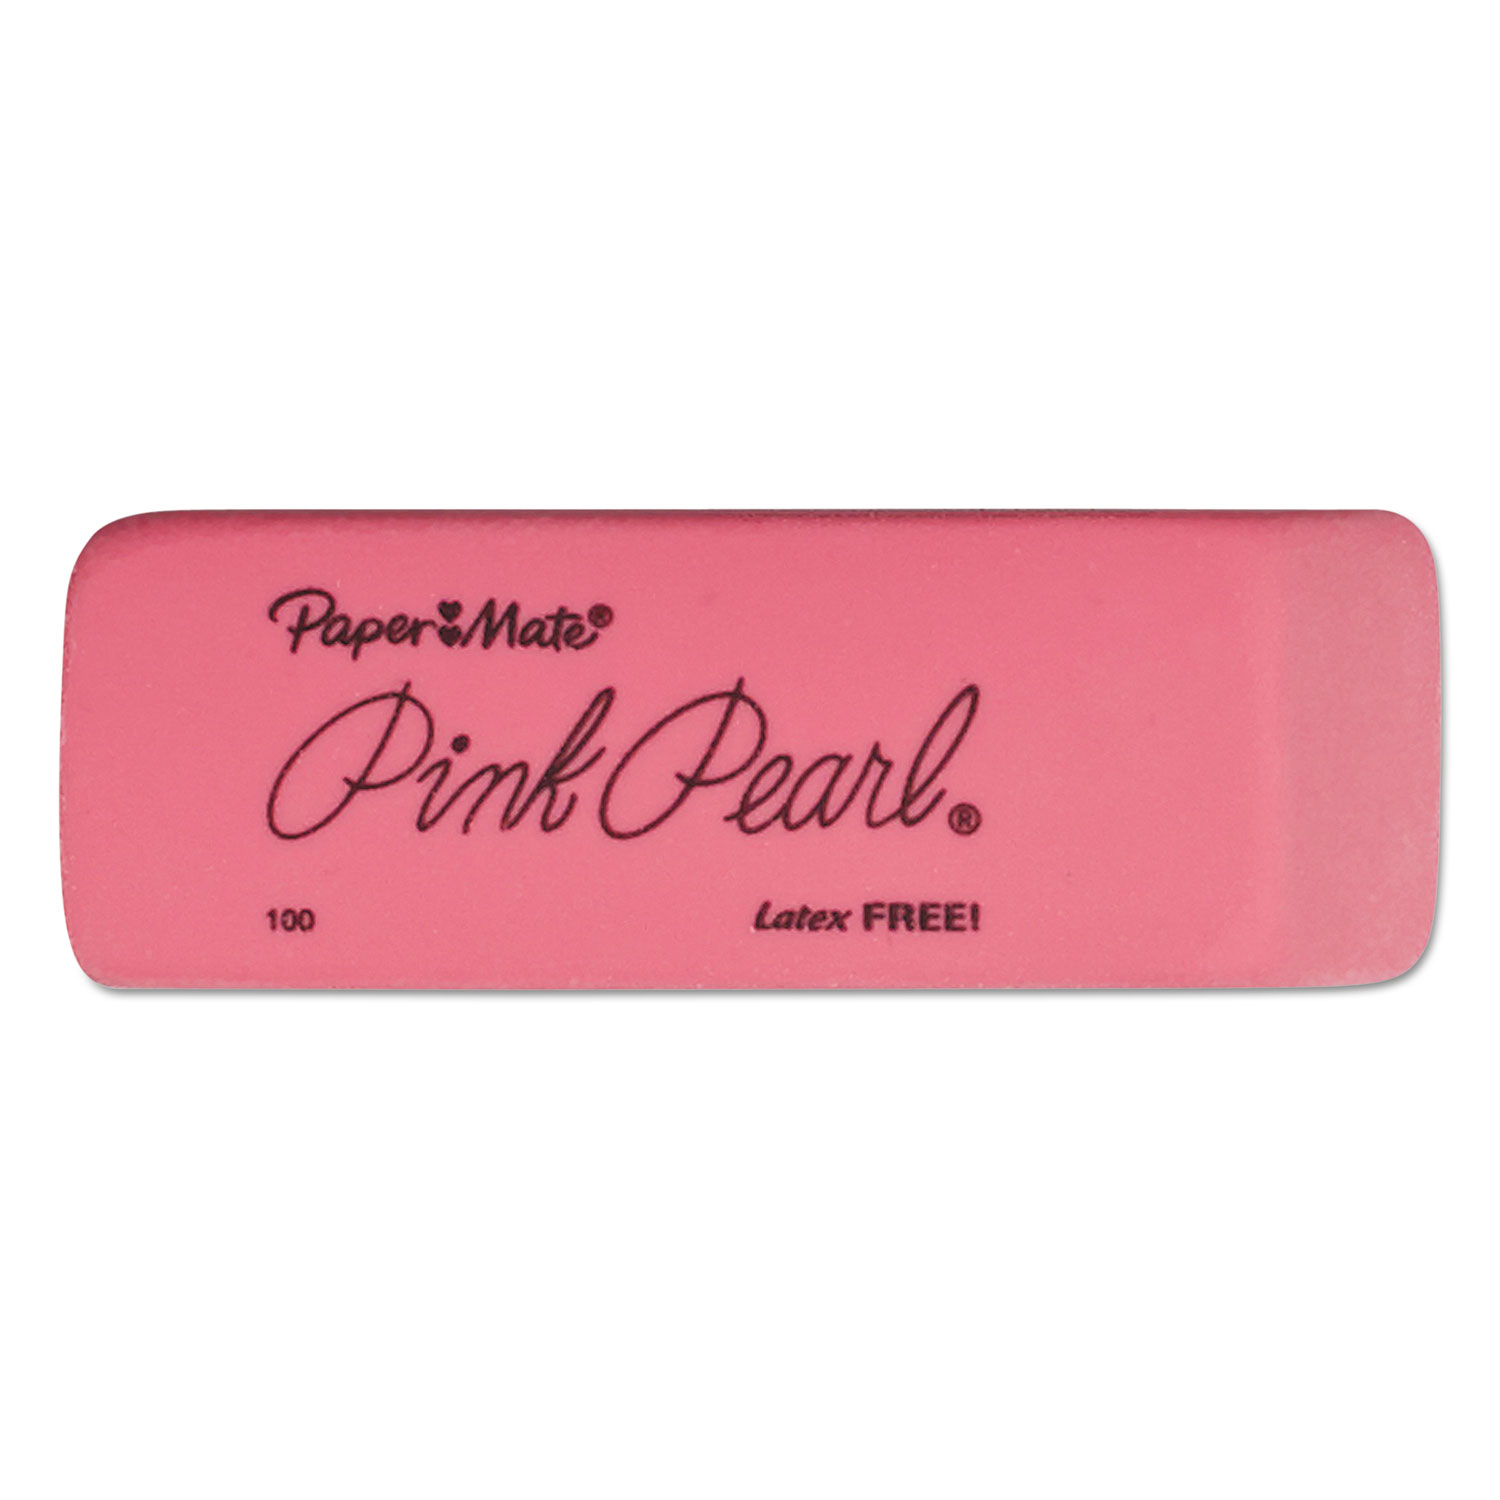  Paper Mate 70520 Pink Pearl Eraser, Rectangular, Medium, Elastomer, 24/Box (PAP70520) 